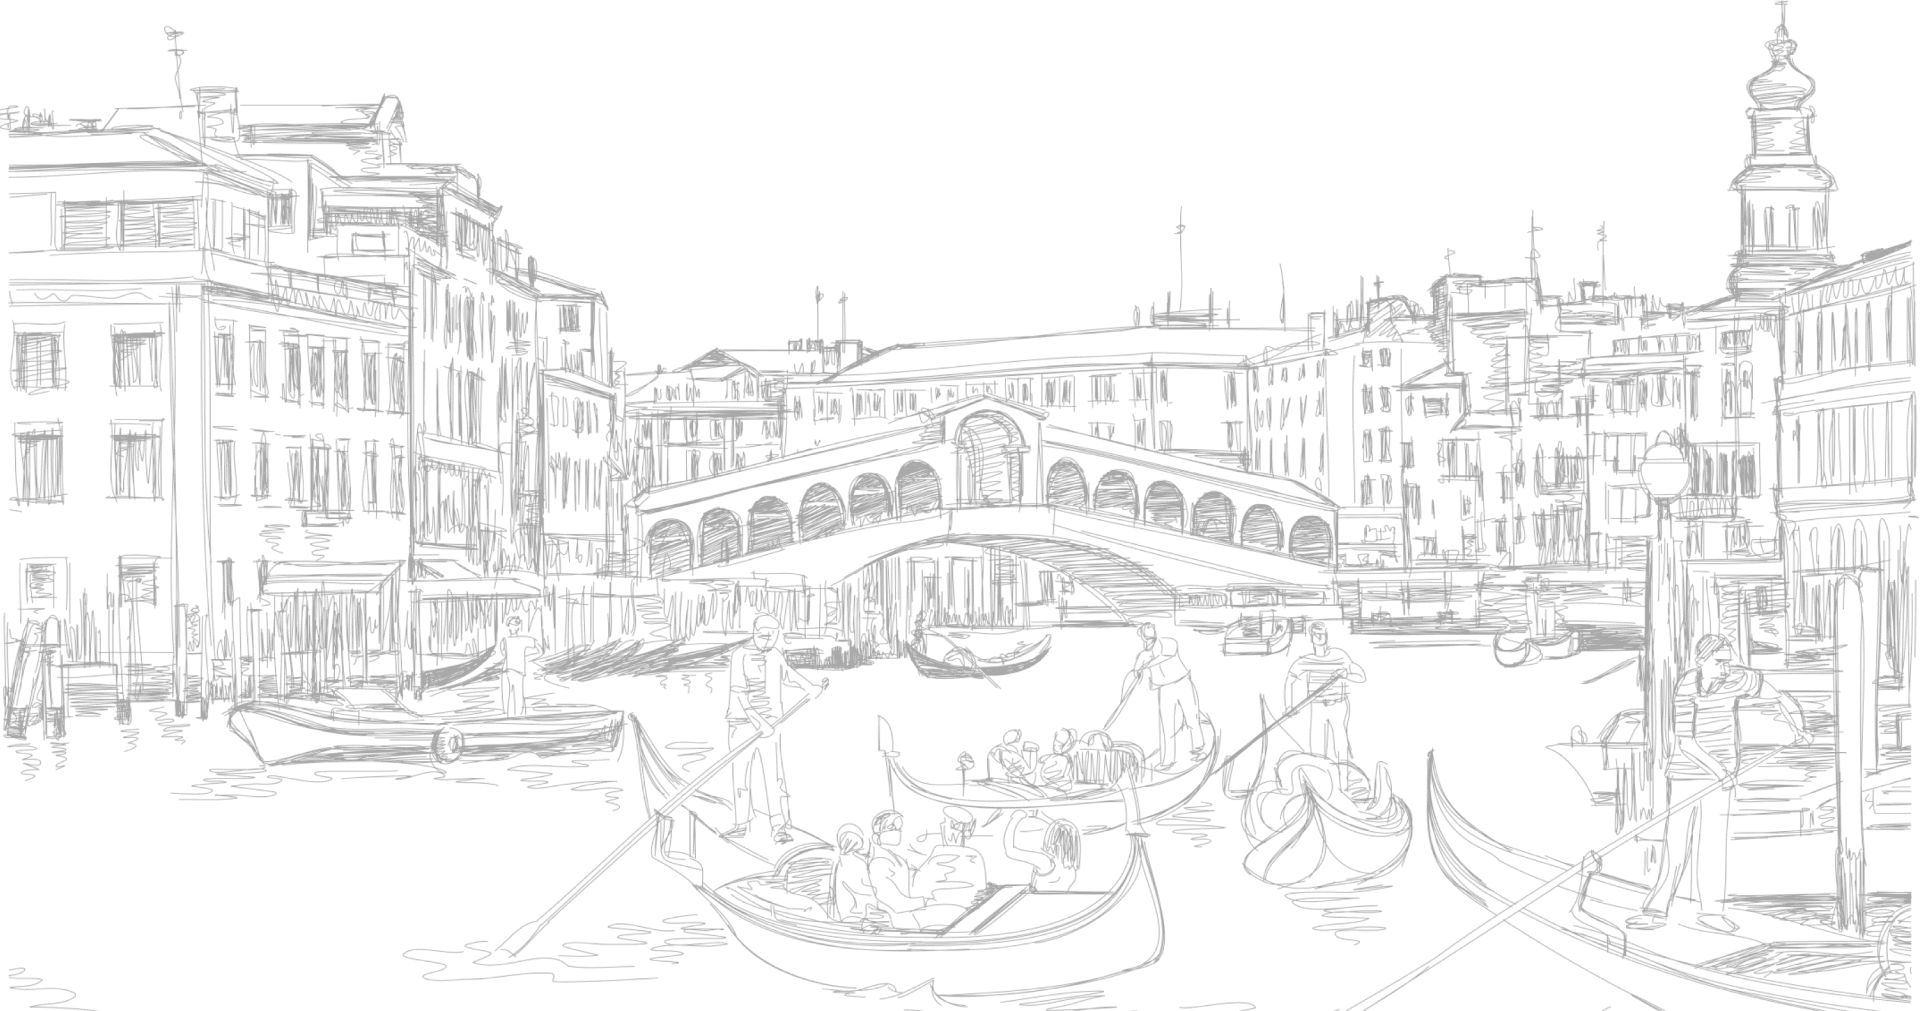 Venice - một thành phố lãng mạn với những con đường kênh rực rỡ ánh nắng. Qua hình ảnh, bạn sẽ cảm nhận được sự trầm mặc và đầy mê hoặc của thành phố này.